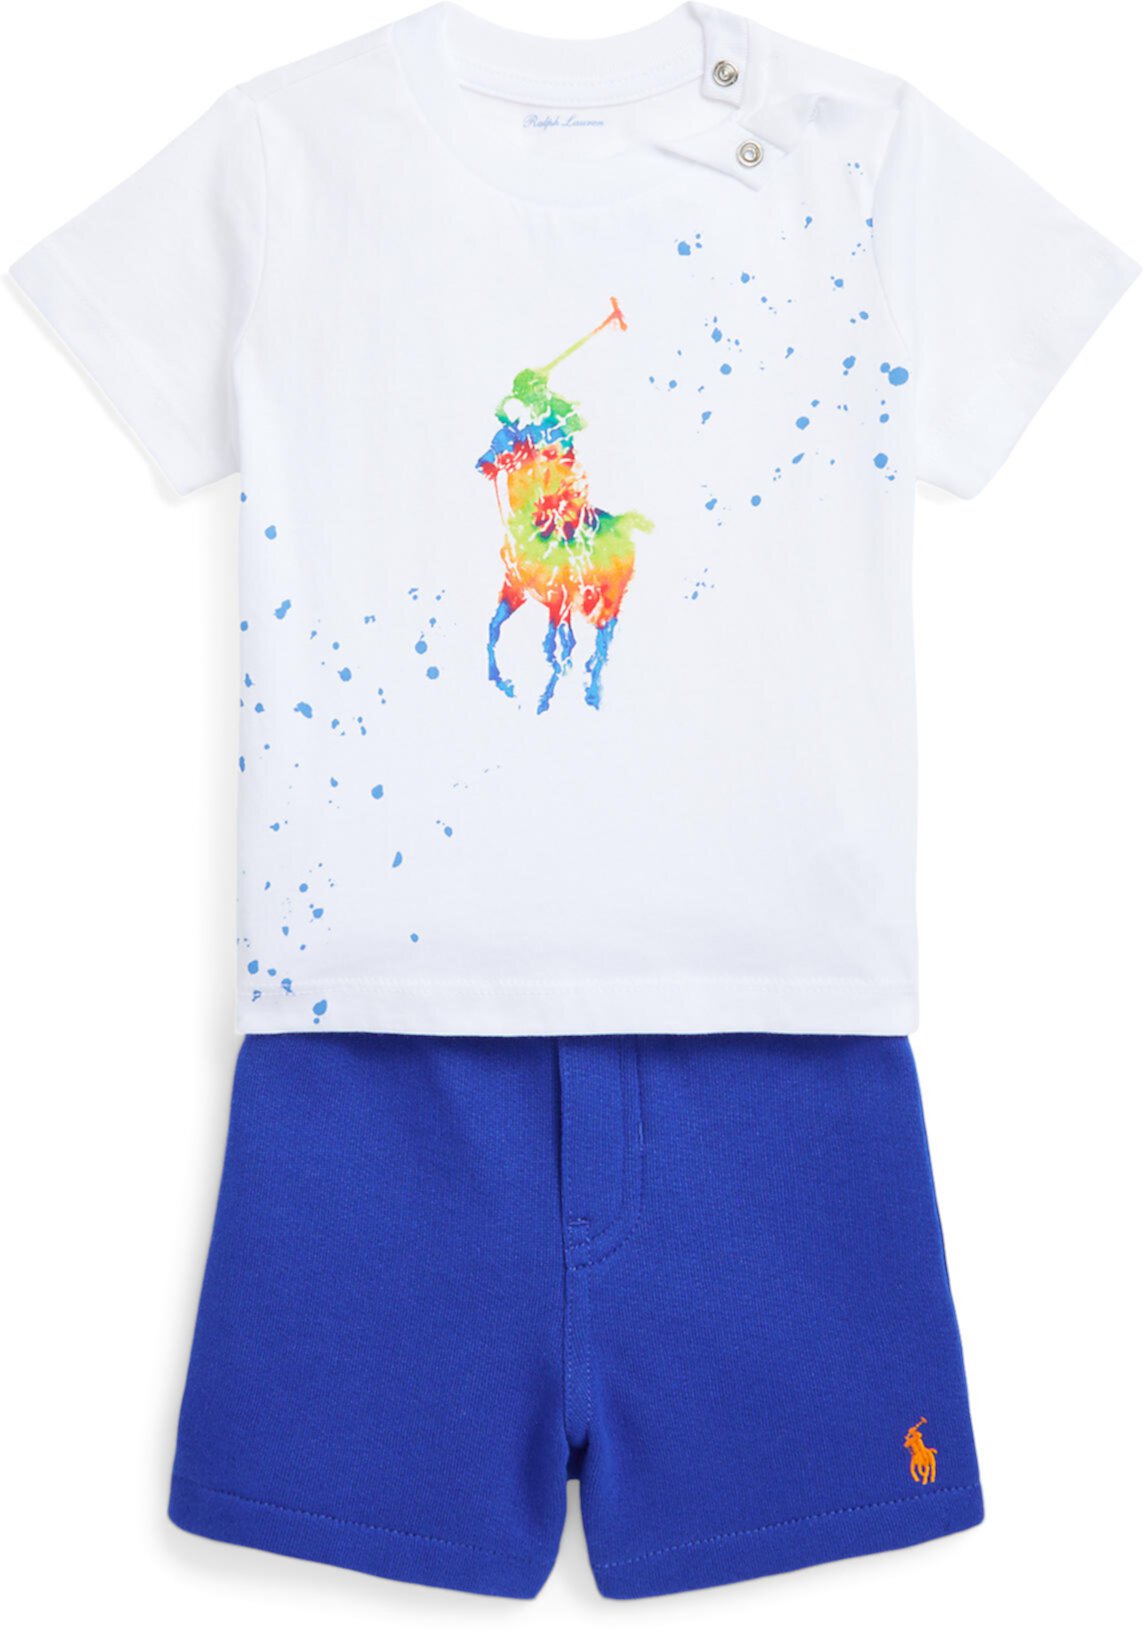 Комплект из футболки и флисовых шорт Big Pony (для младенцев) Polo Ralph Lauren